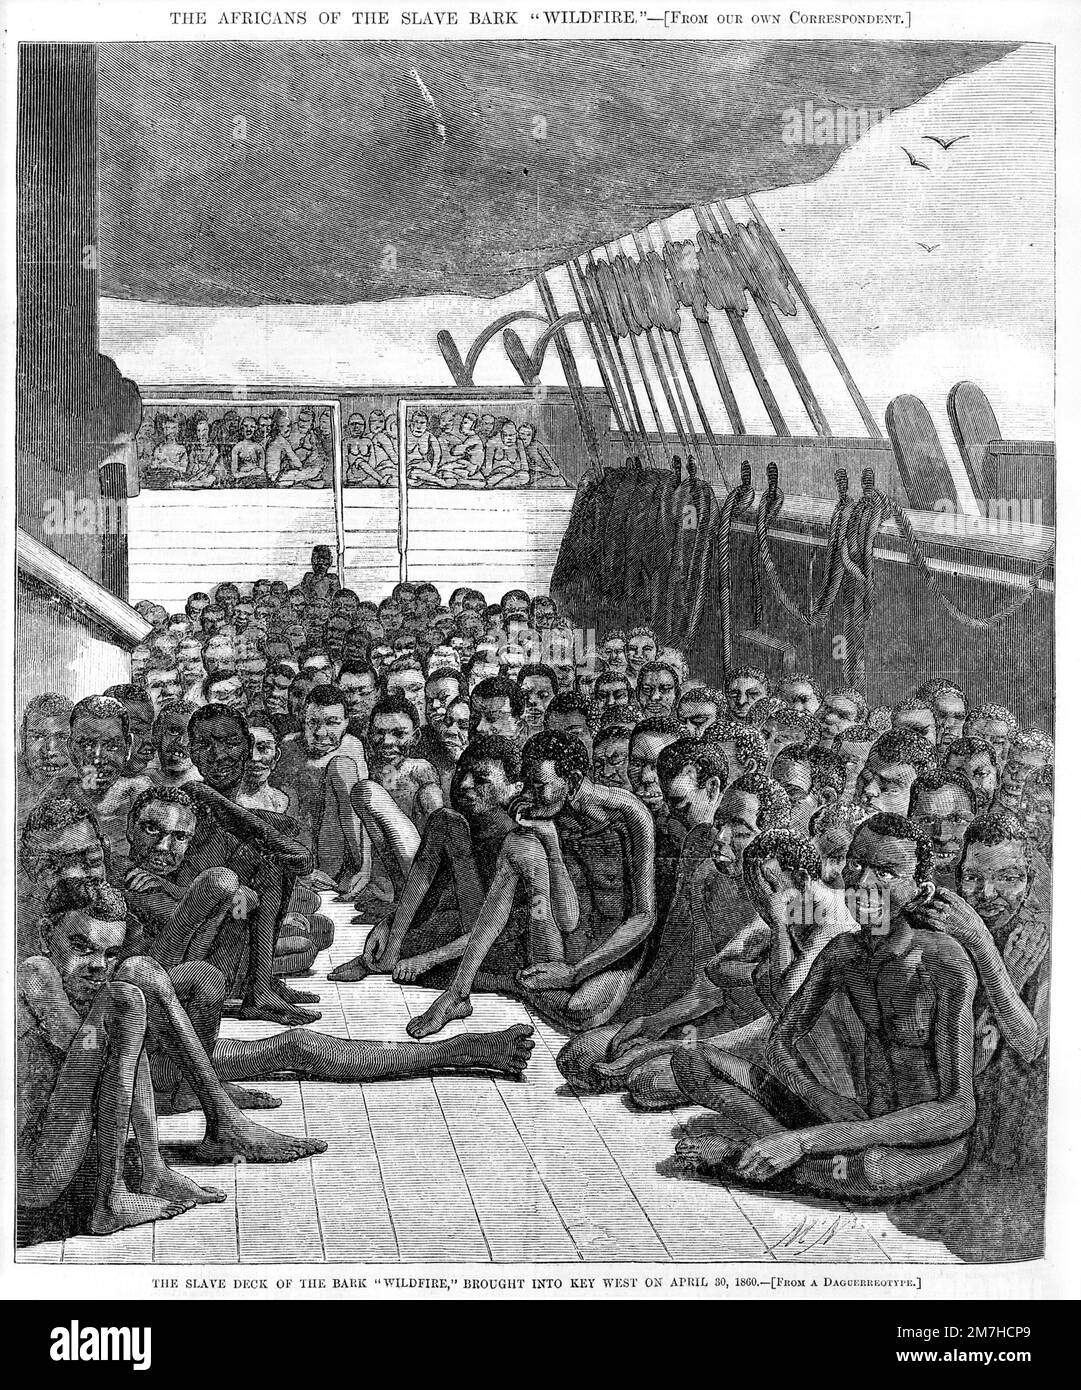 Illustration du navire-esclave américain Wildfire utilisé pour transporter des esclaves en Europe et dans les Amériques, montrant les conditions horriblement surpeuplées dans lesquelles les esclaves ont été transportés. Banque D'Images